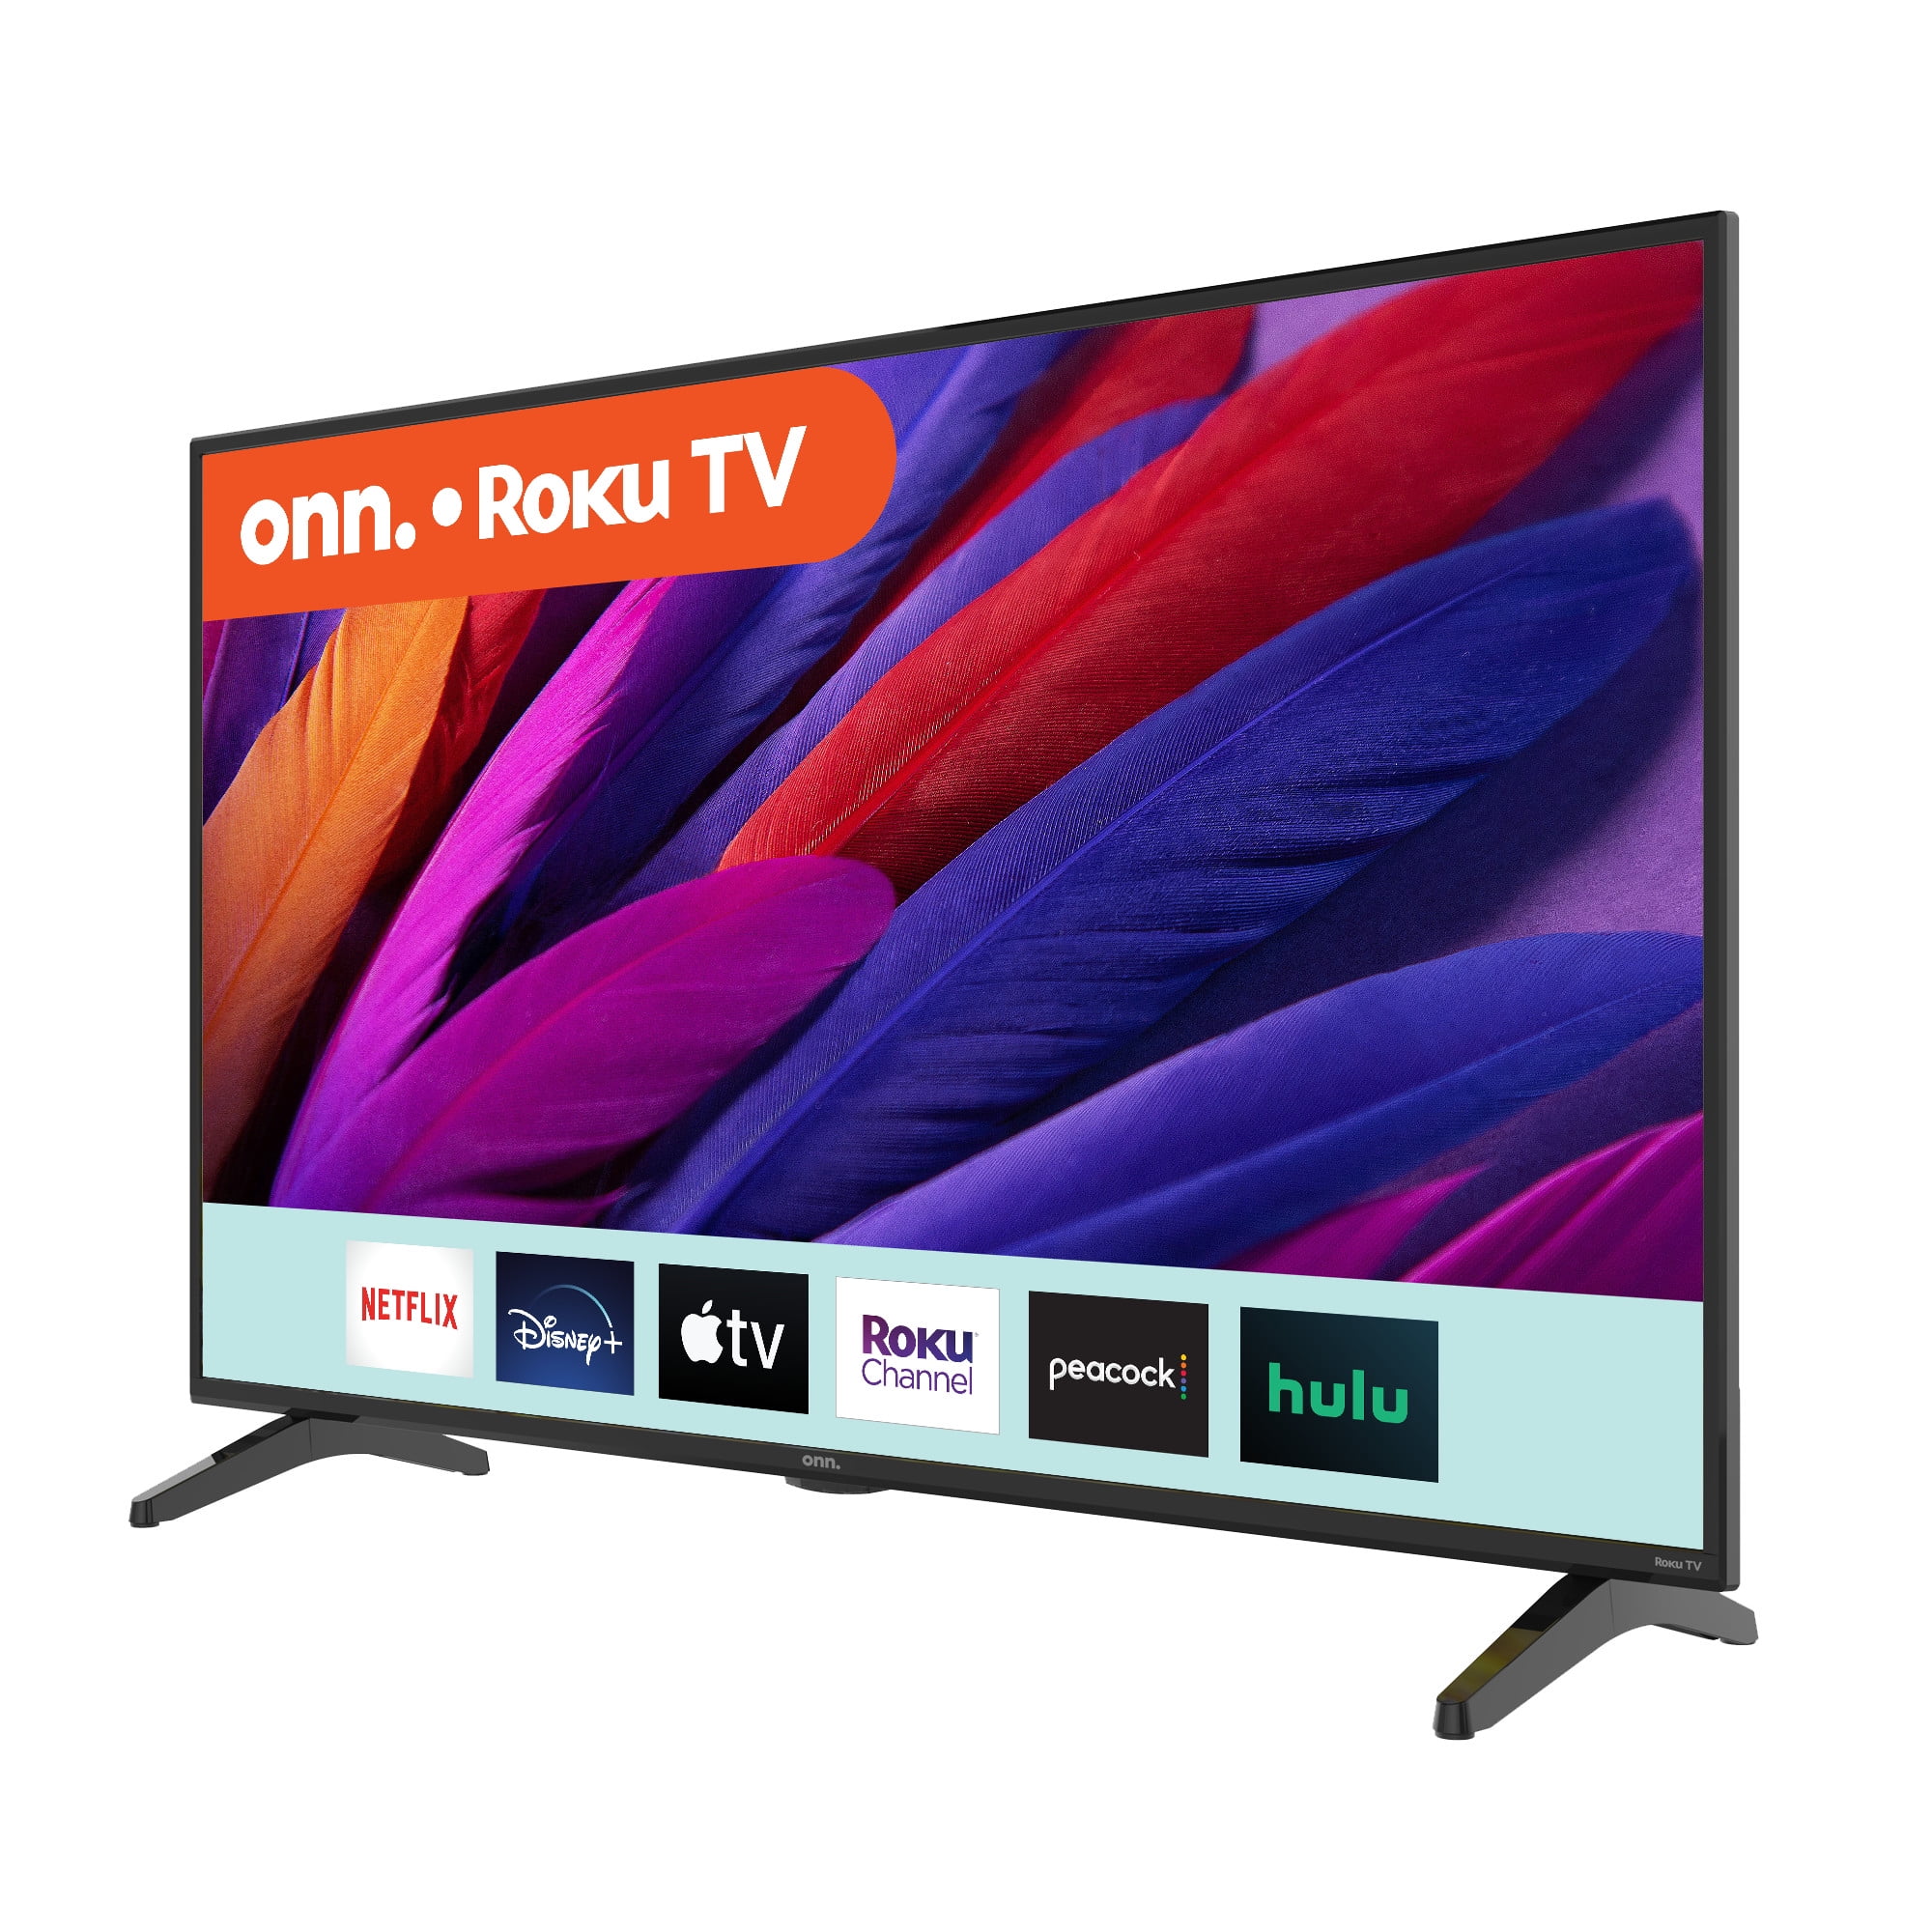 onn. 43” Class 4K (2160P) LED Roku Smart TV (100012584) Walmart.com